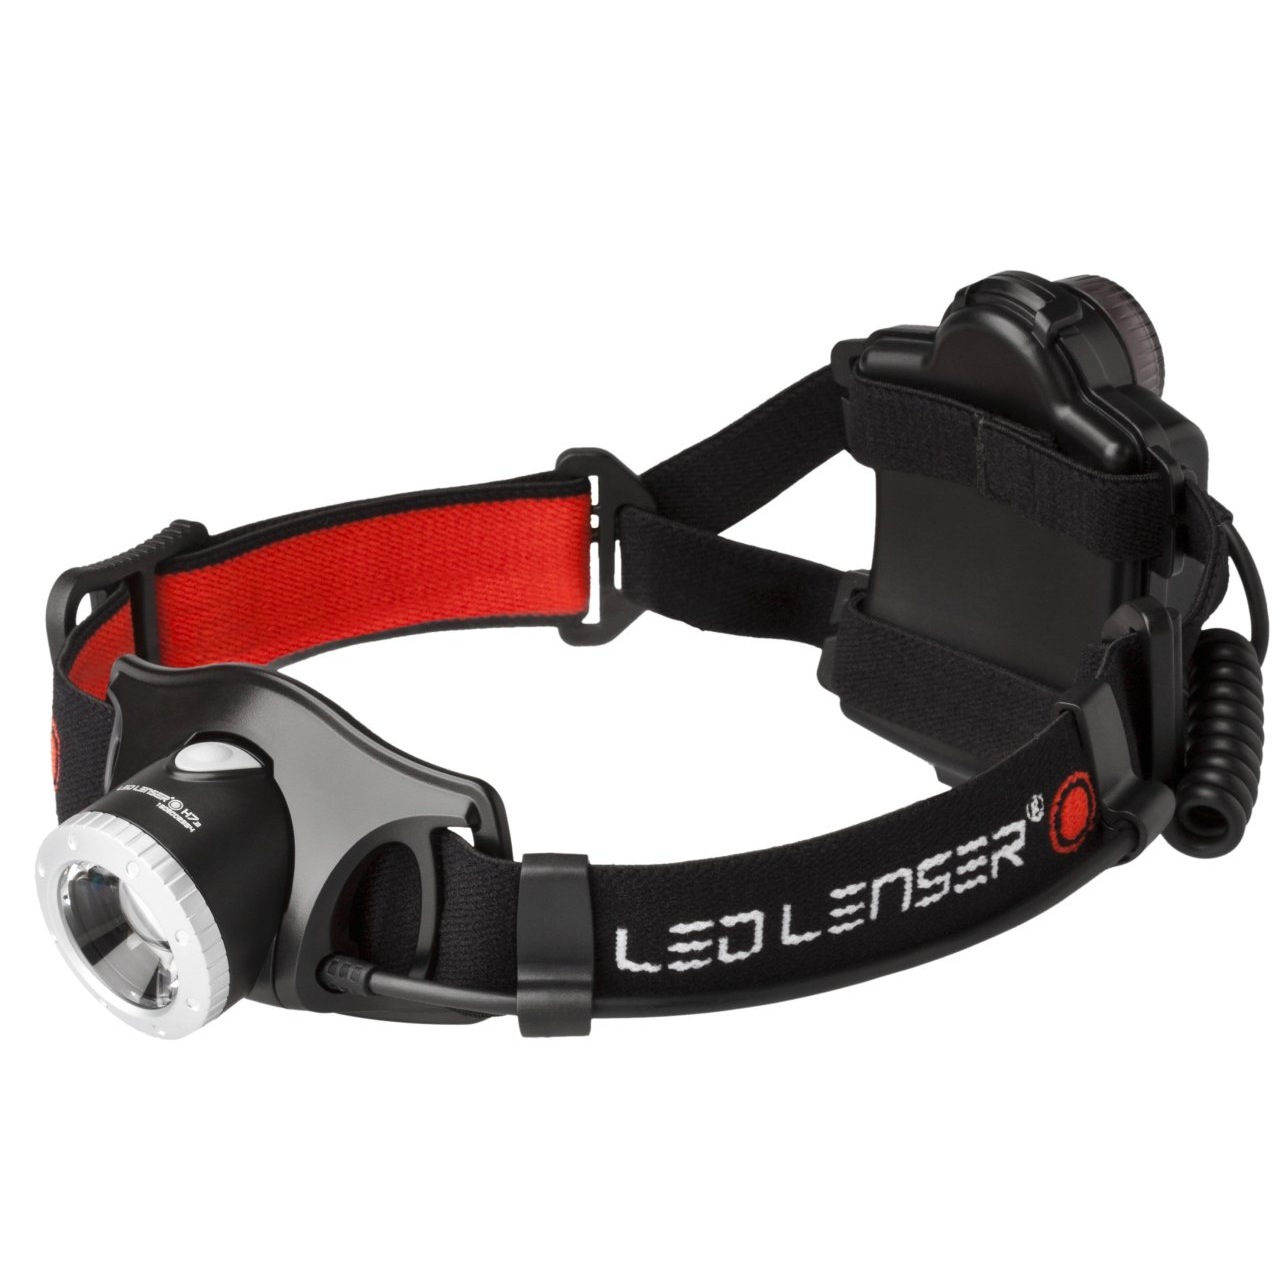 LED Lenser H7.2 - Stirnband-Taschenlampe - Schwarz - Rot - Weiß - LED - 1 Lampen - 250 lm - 160 m